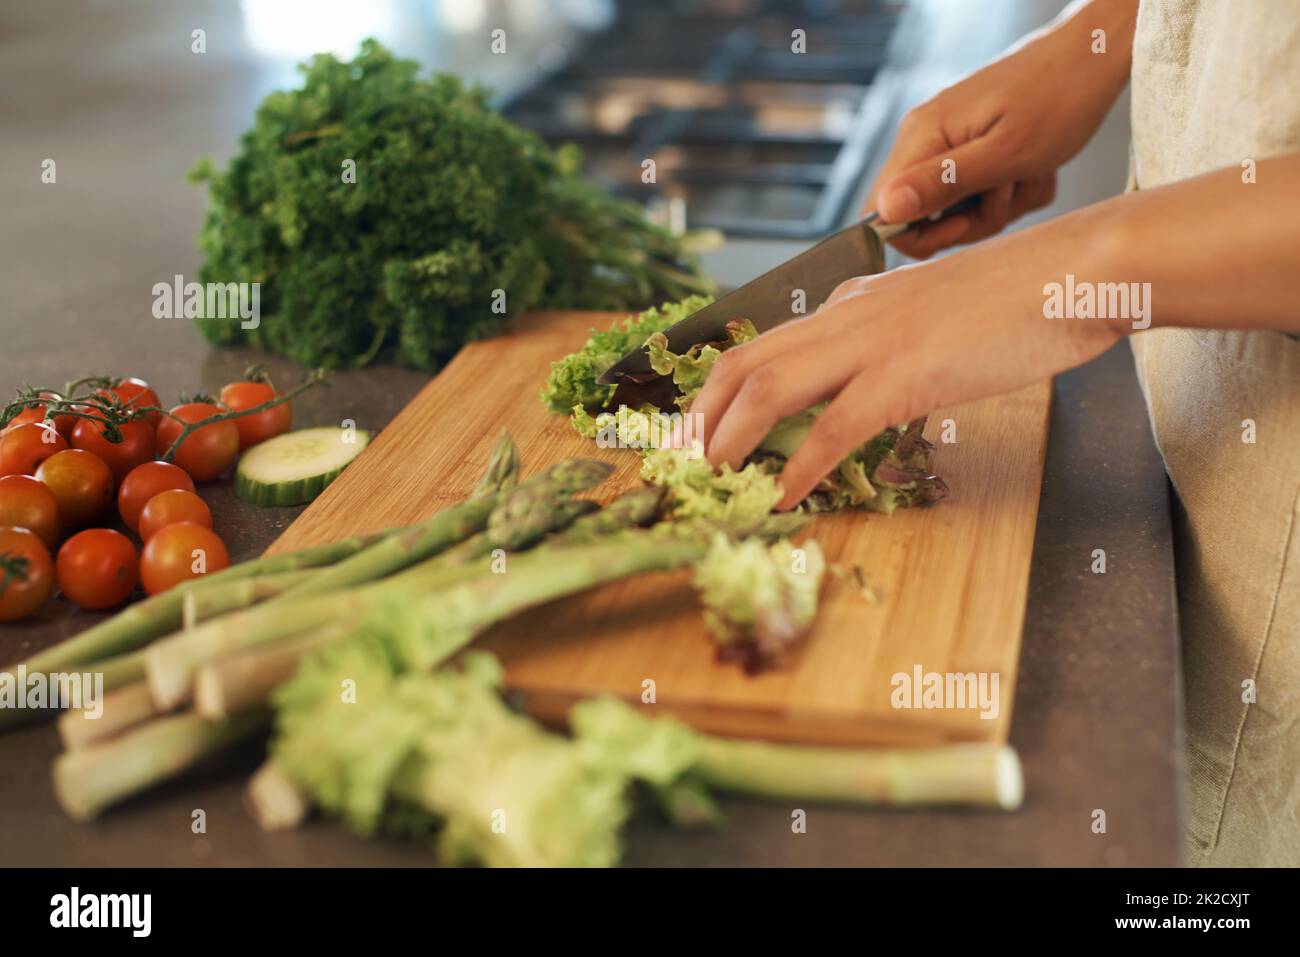 https://c8.alamy.com/compes/2k2cxjt/fresco-de-la-tierra-disparo-de-una-mujer-cortando-verduras-en-tablas-de-cortar-2k2cxjt.jpg